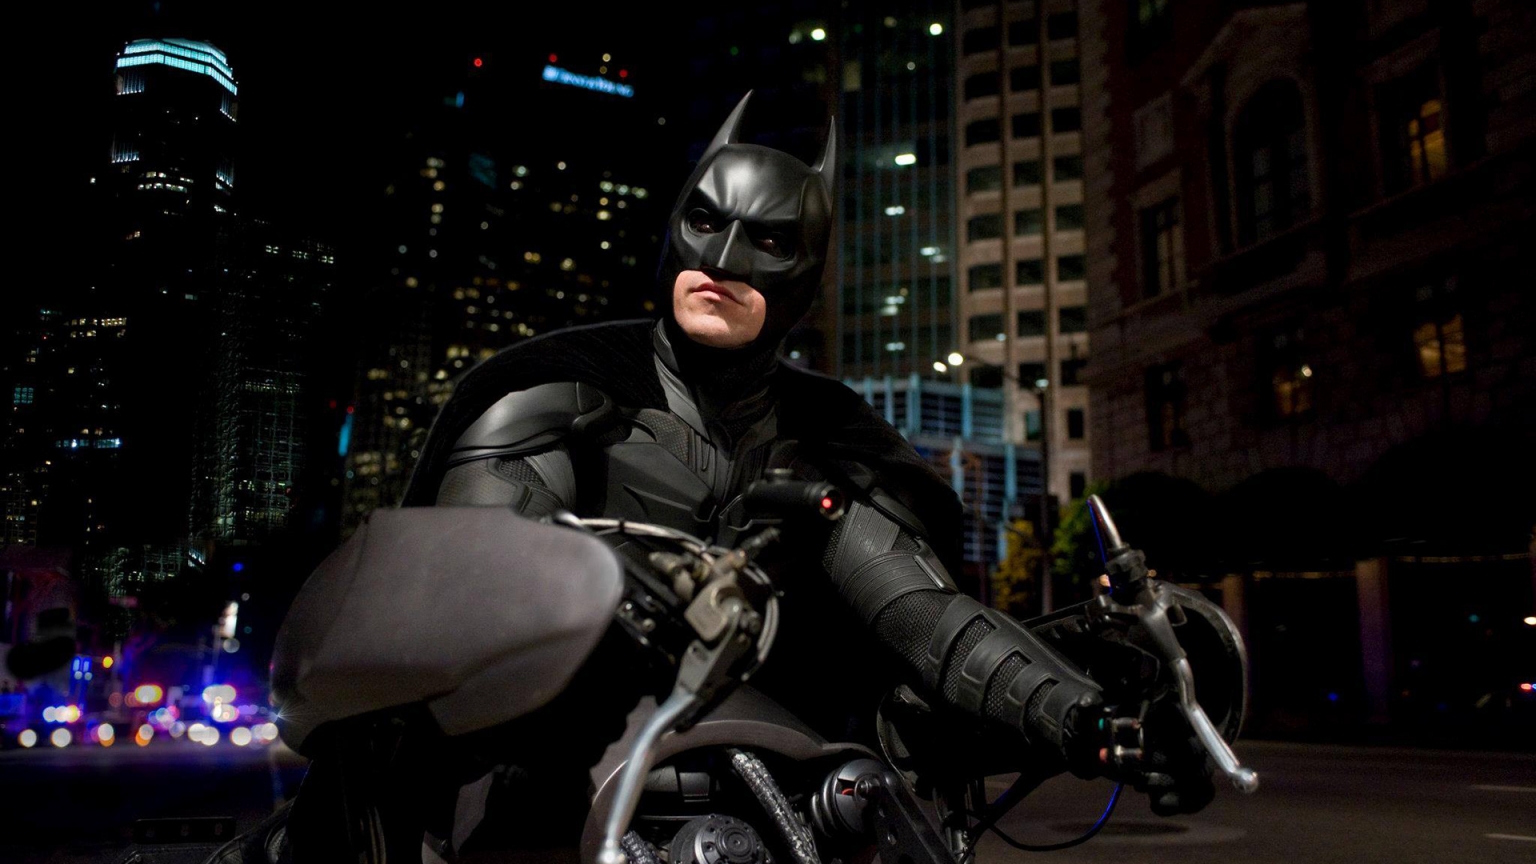 Batman on Bike for 1536 x 864 HDTV resolution